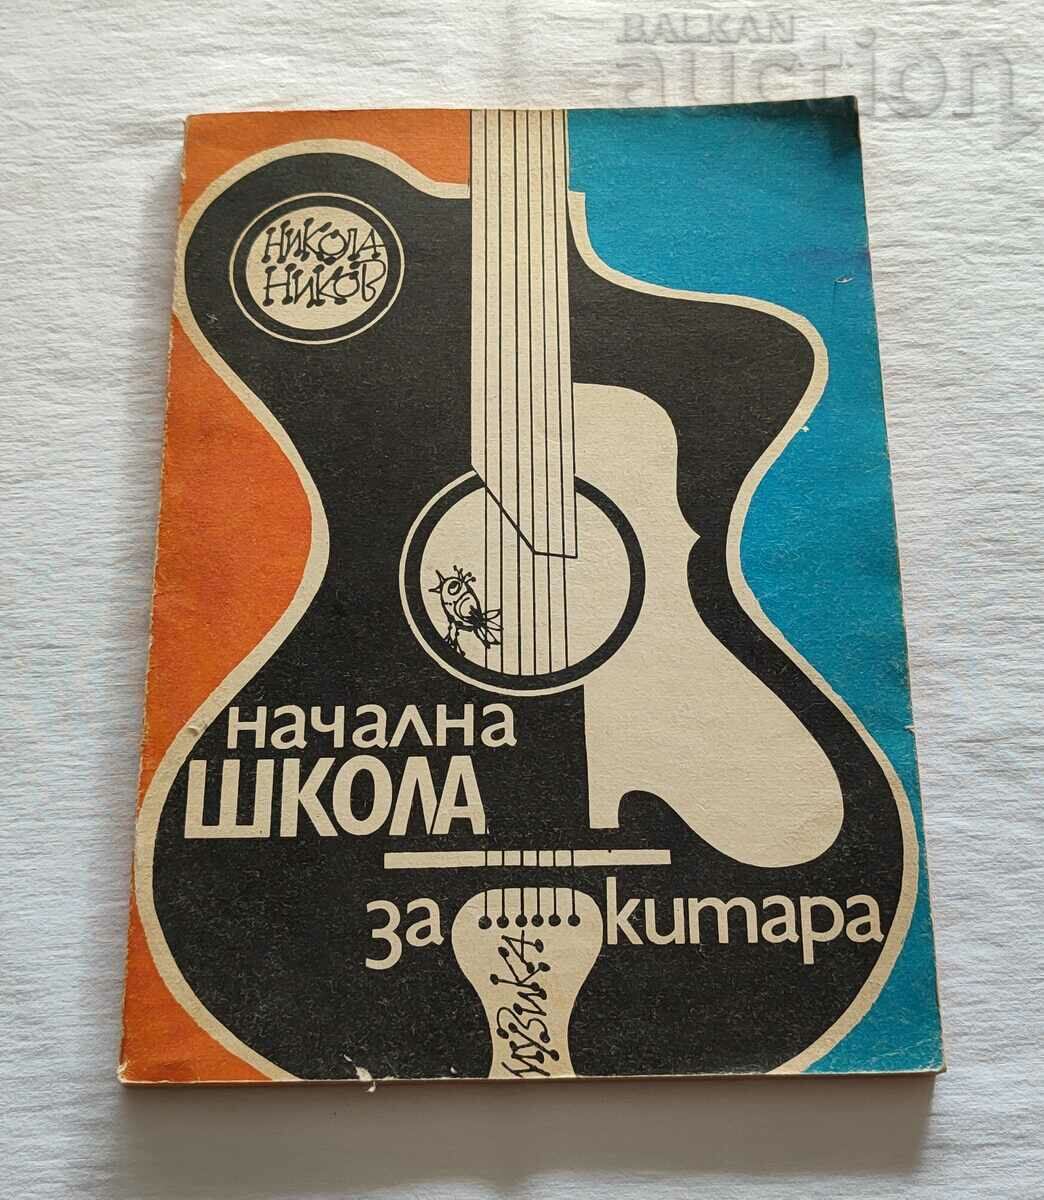 ȘCOALA PRIMARĂ DE CHITARĂ N. NIKOV 1985